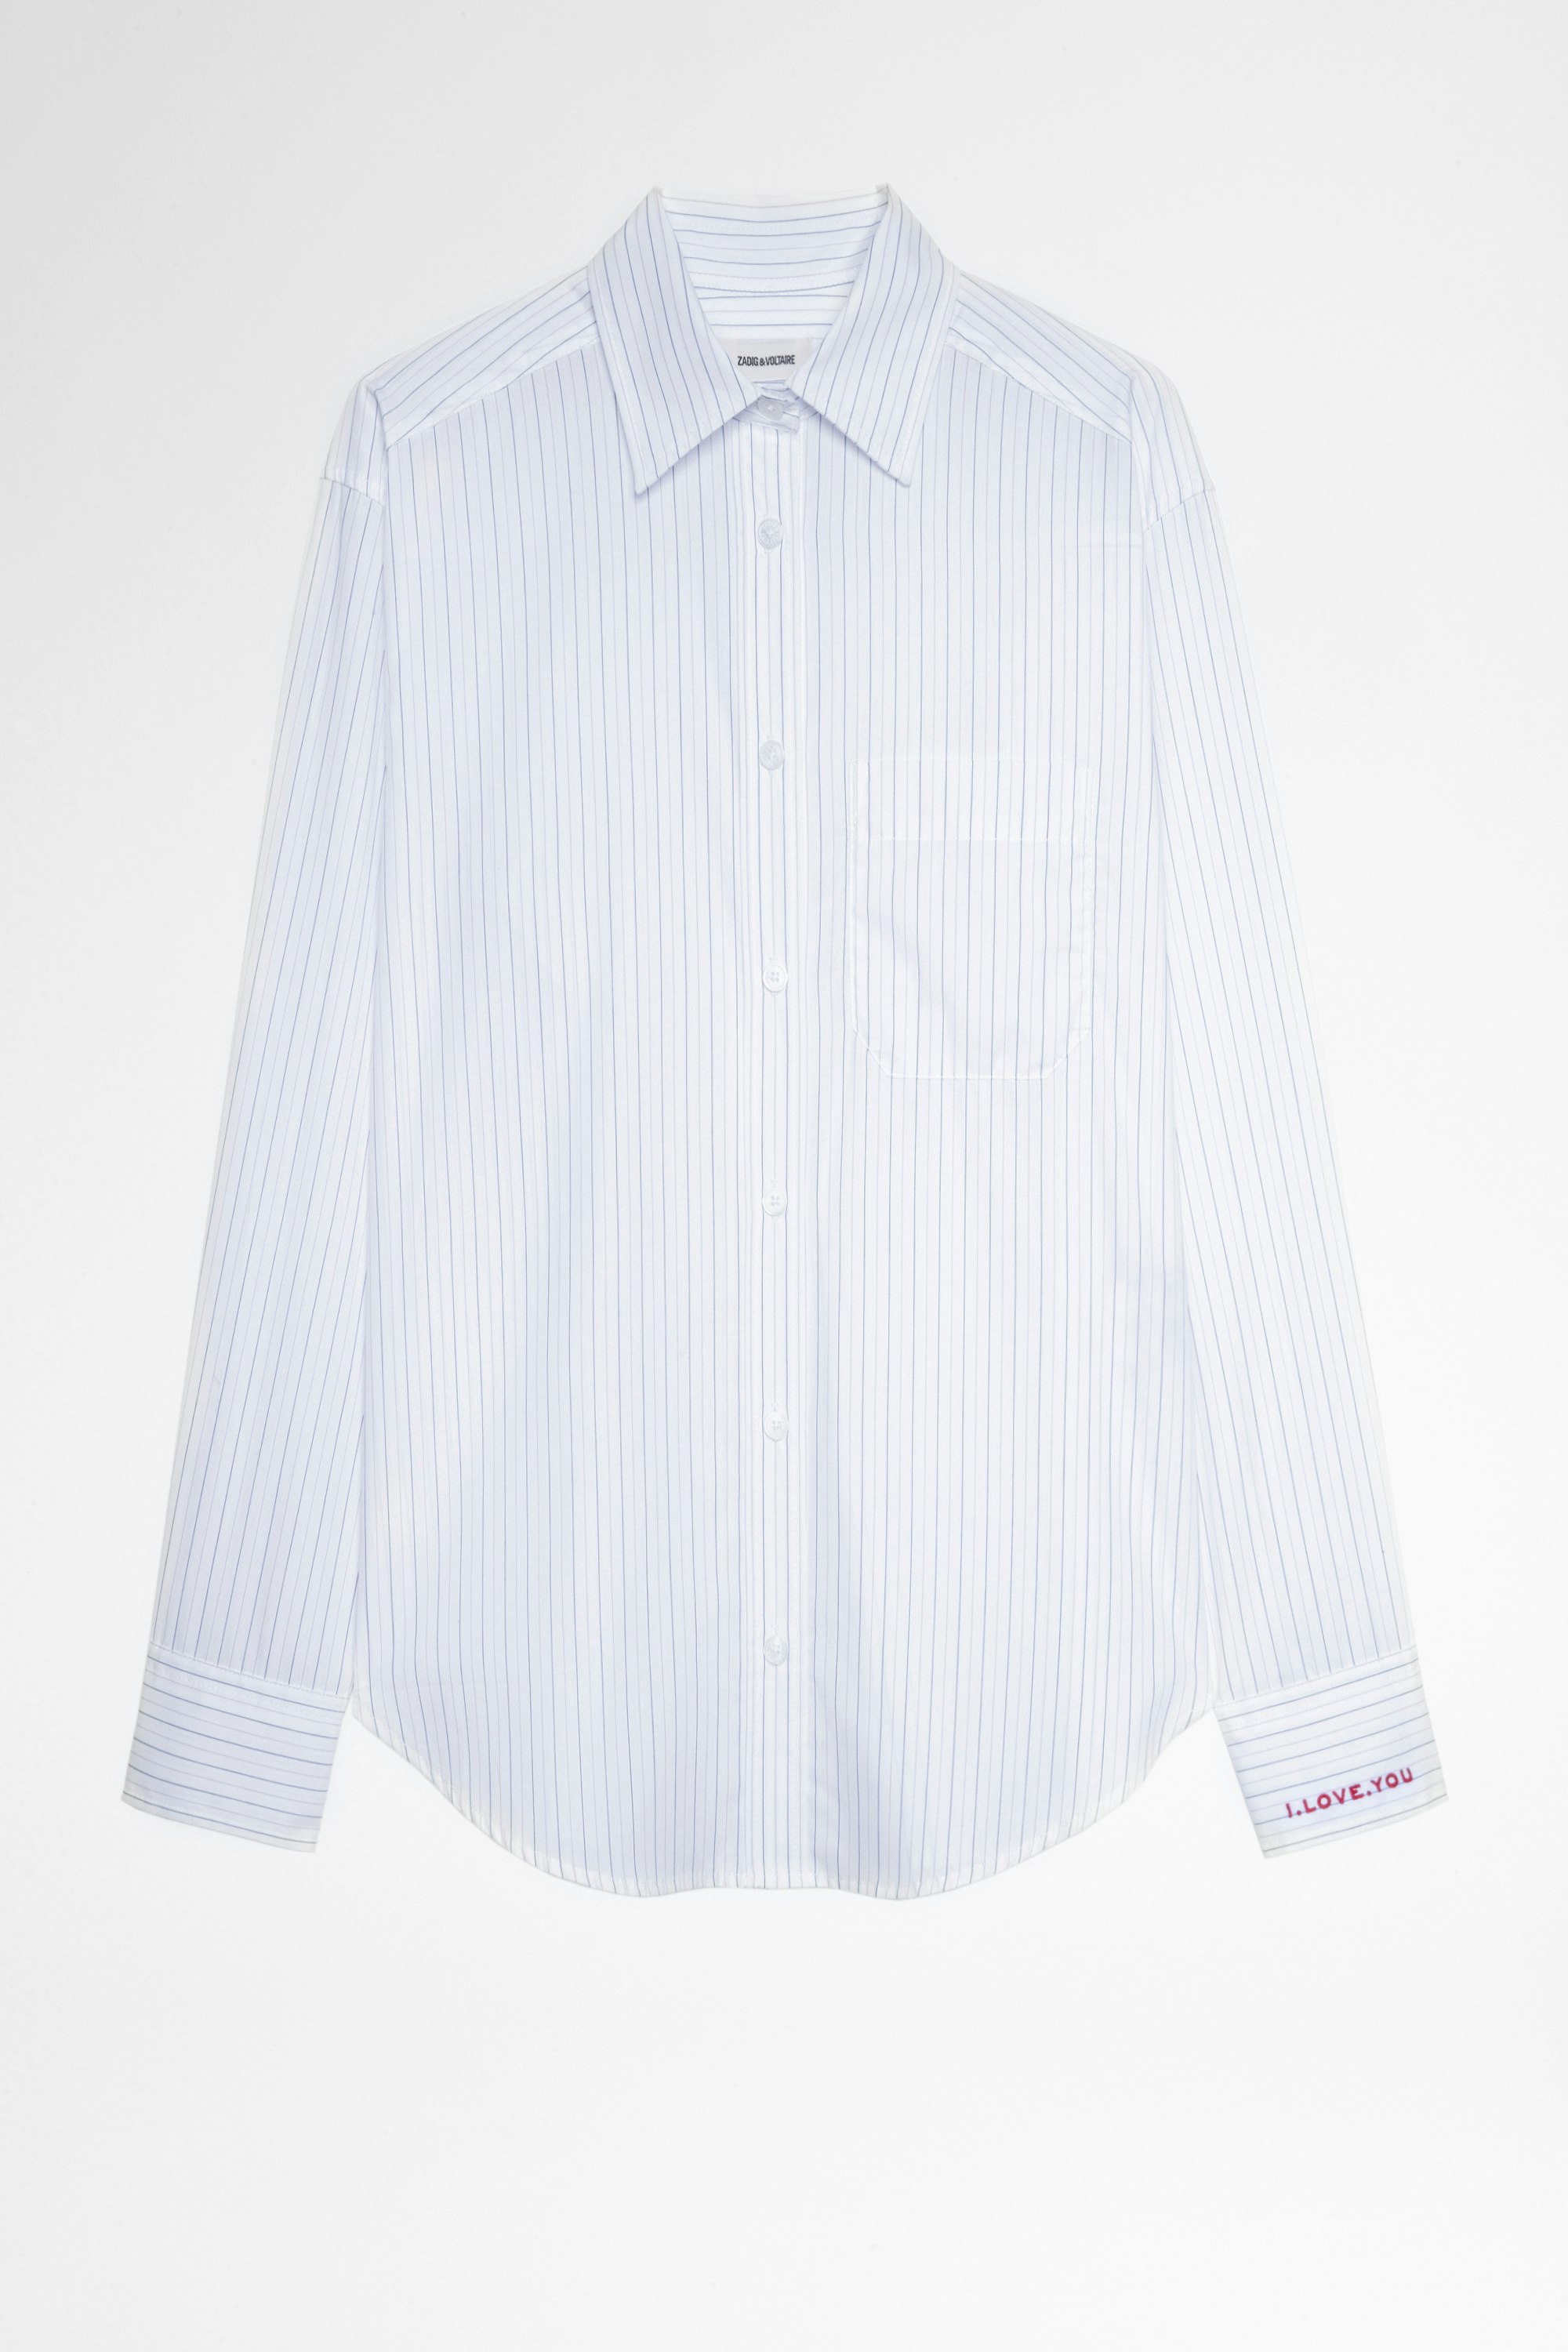 Camisa Tais Camisa blanca de rayas de algodón de mujer. Confeccionado con fibras procedentes de la agricultura ecológica.